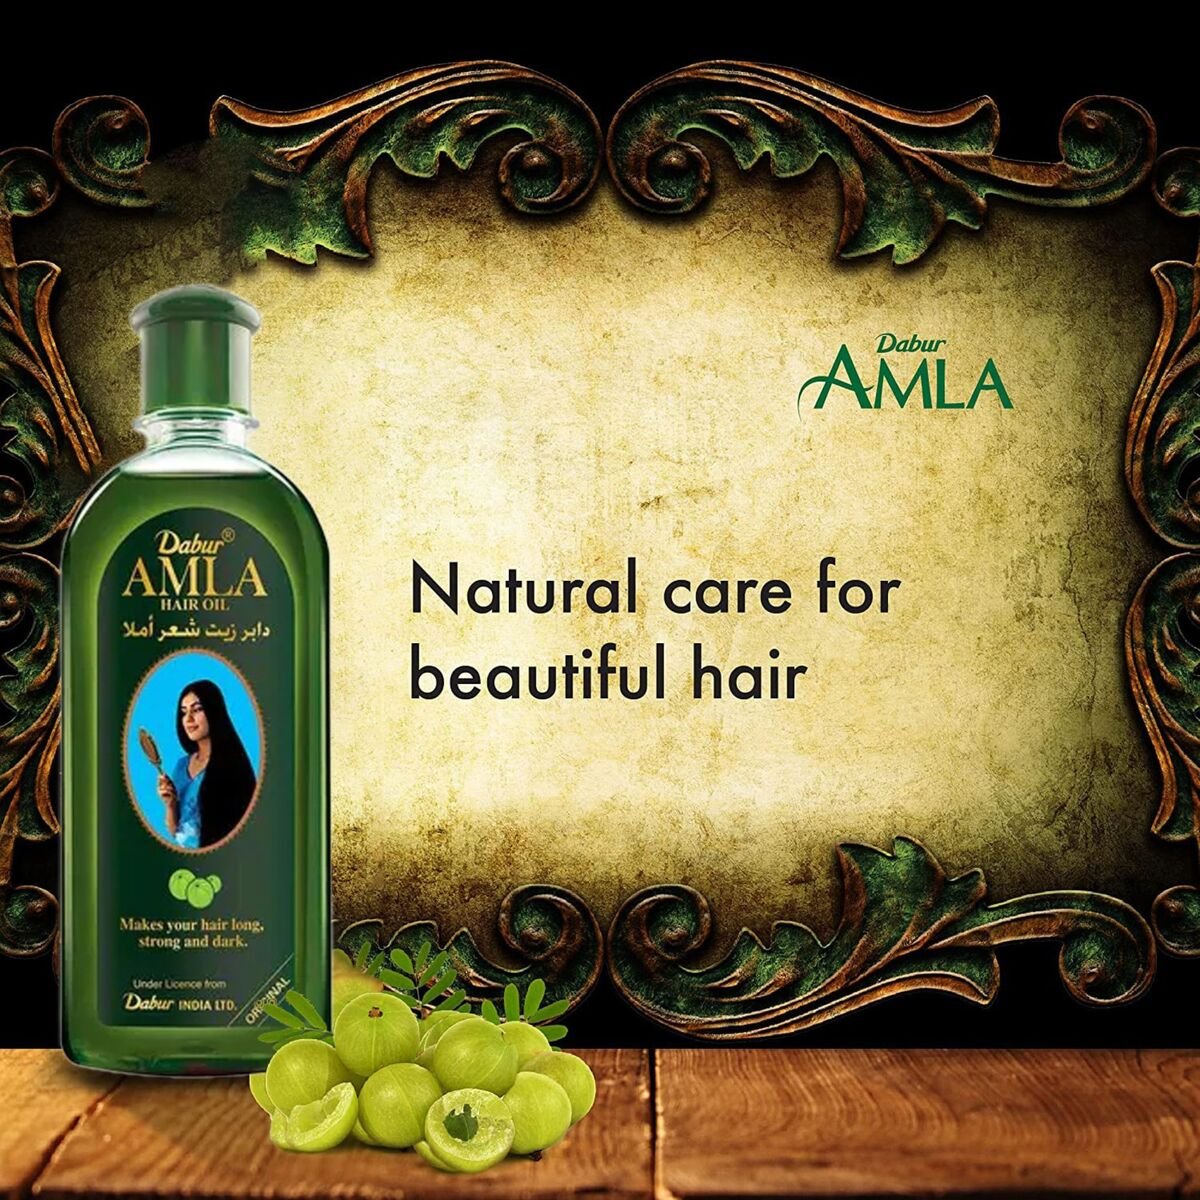 Dabur Amla Hair Oil Value Pack 2 x 200 ml